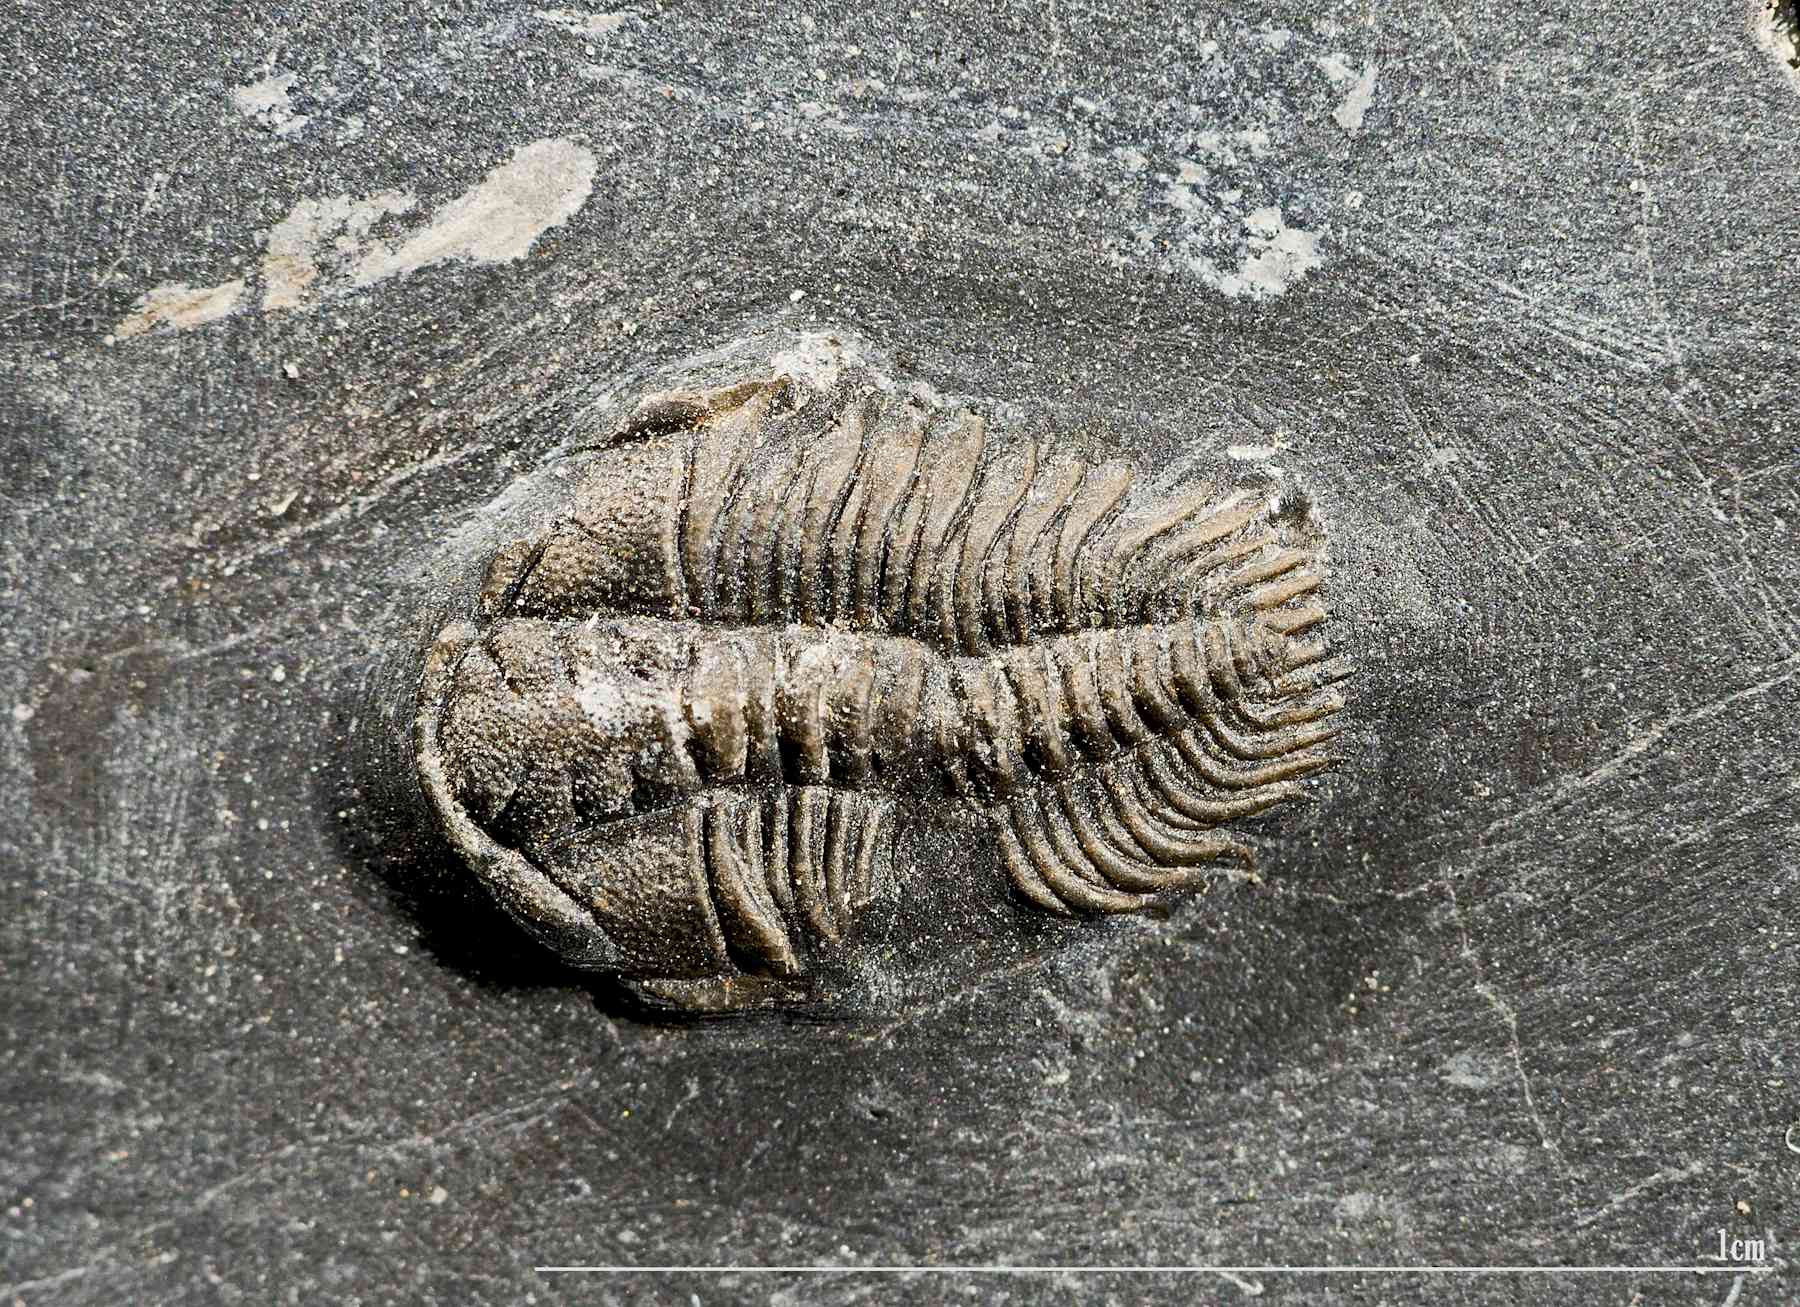 Trilobite fossil.